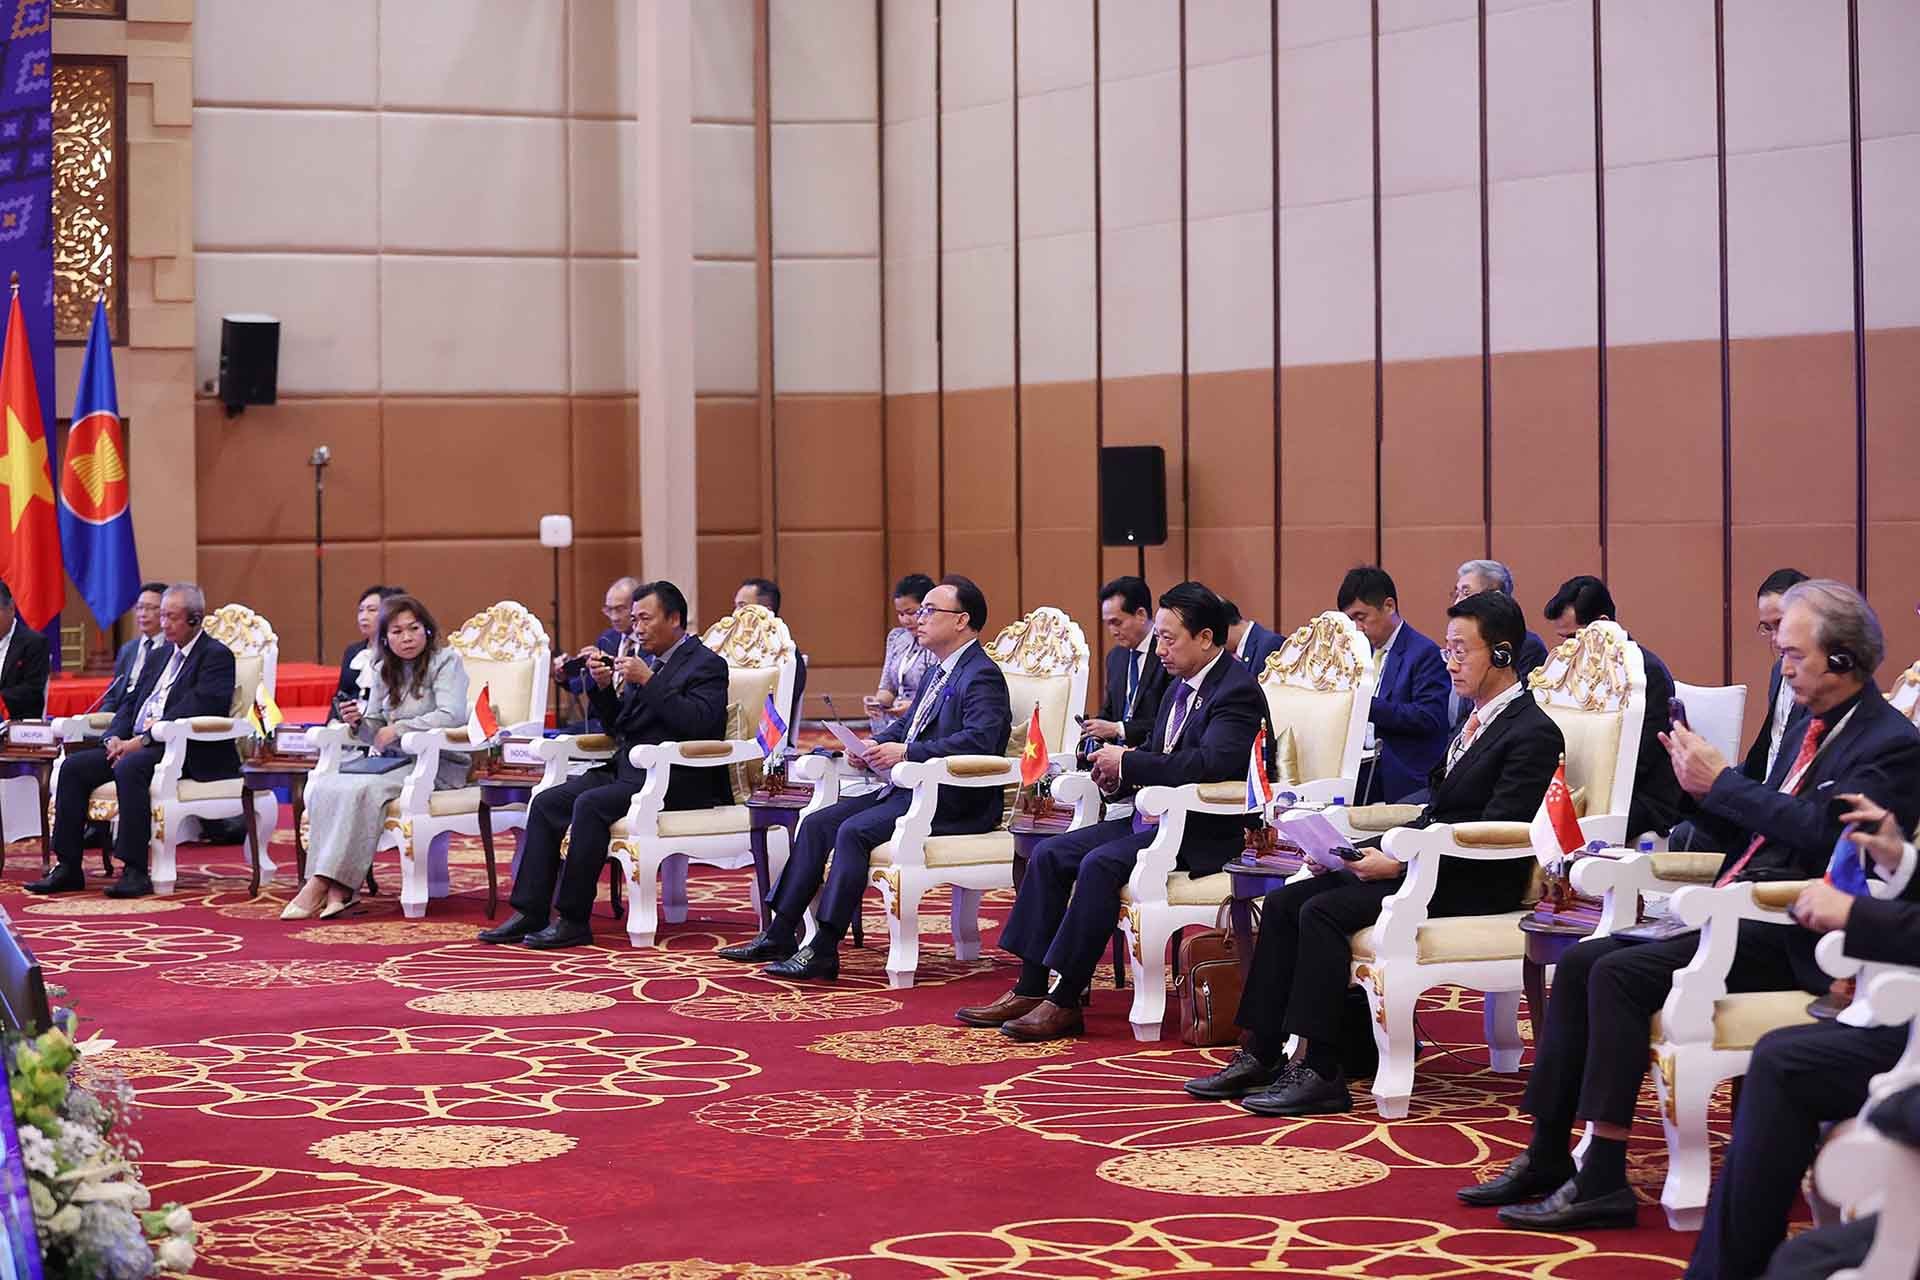 Thủ tướng Phạm Minh Chính tham dự các hoạt động đầu tiên trong khuôn khổ Hội nghị cấp cao ASEAN